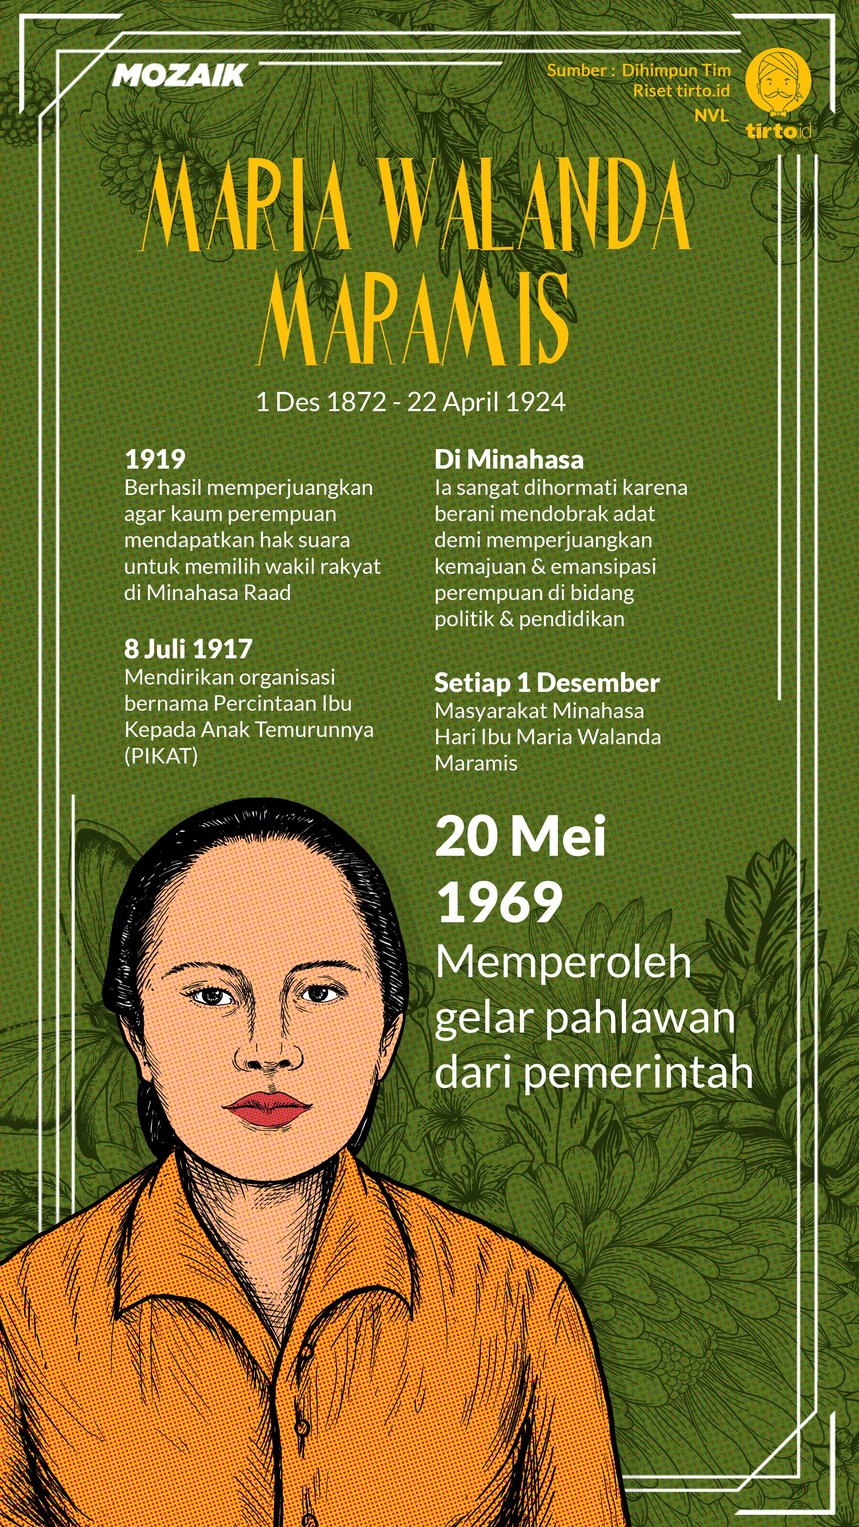 Infografik Mozaik Maria Walanda Maramis